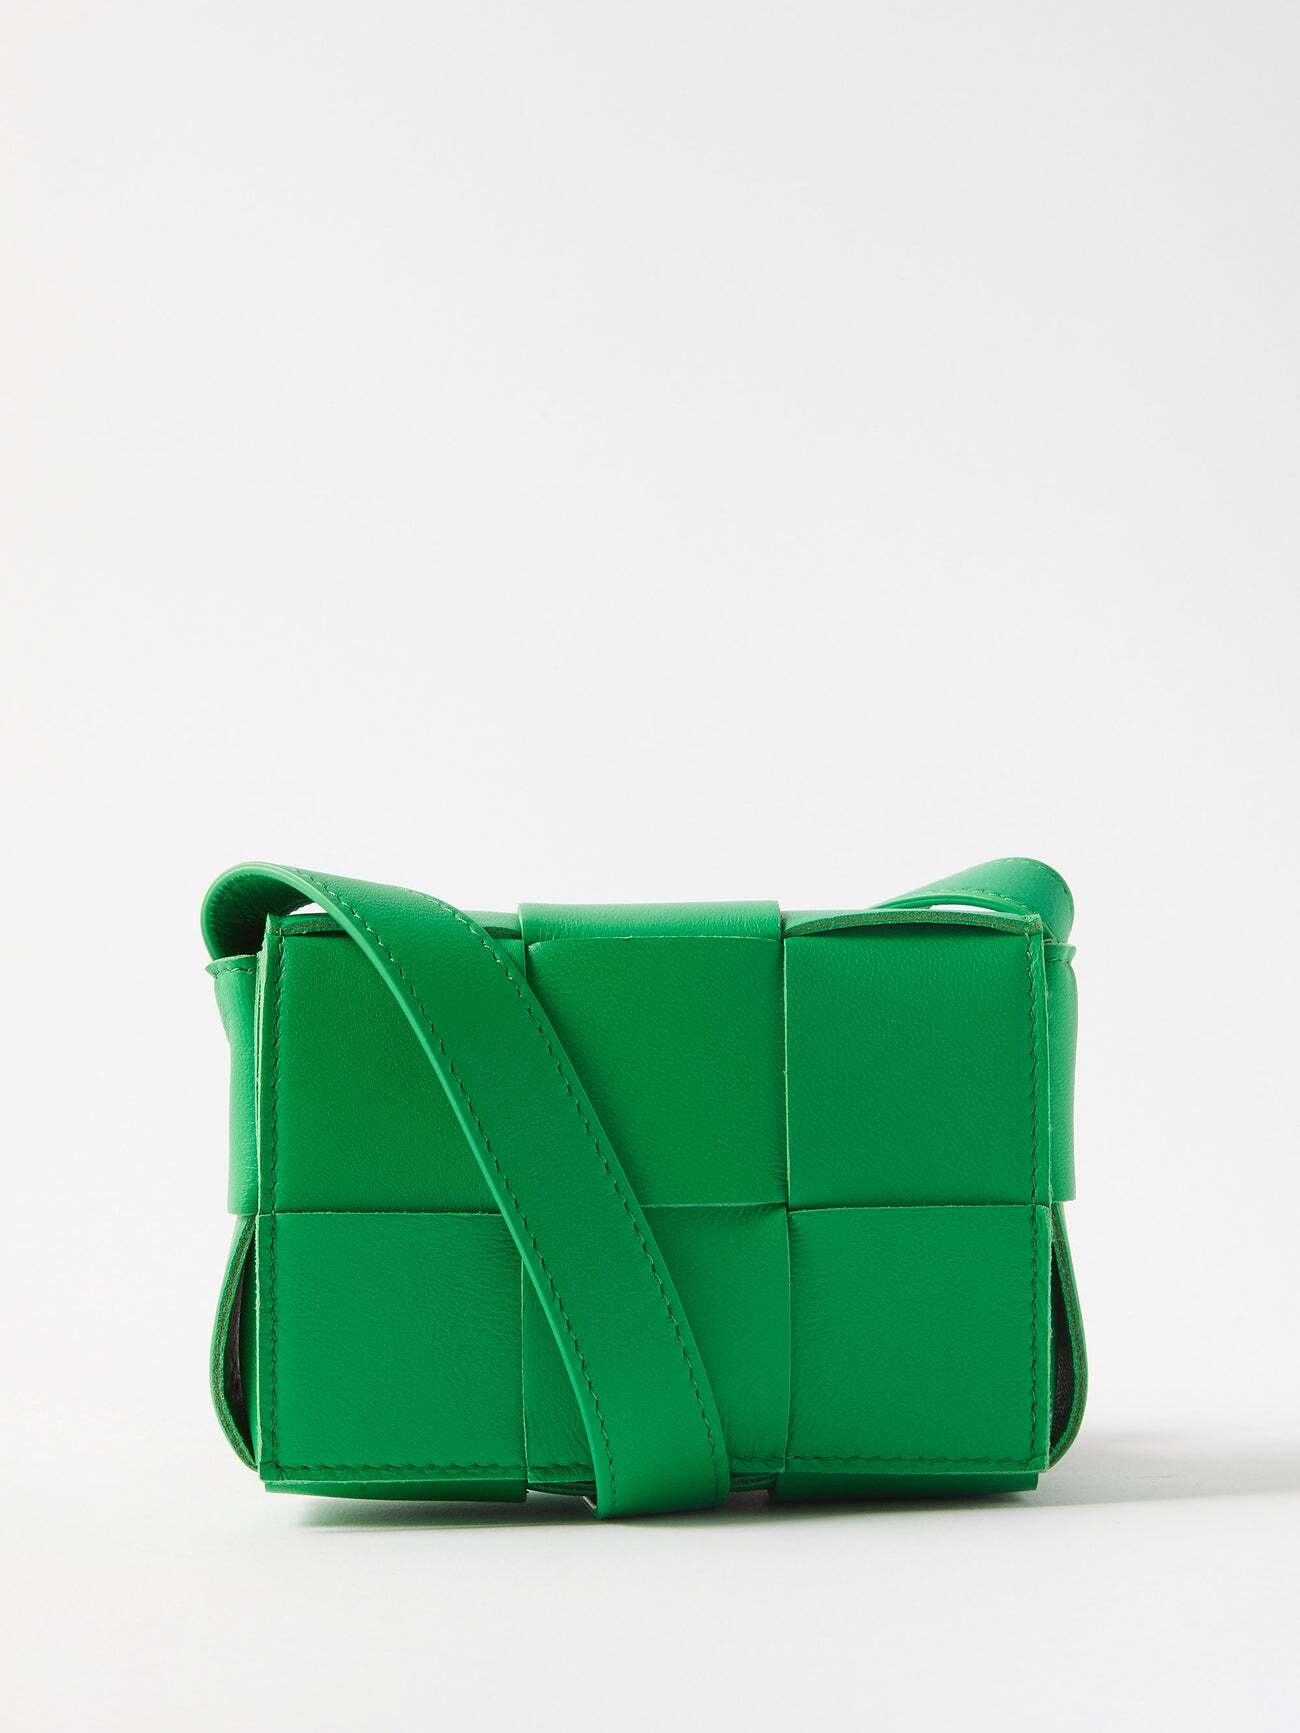 Bottega Veneta - Candy Cassette Mini Leather Cross-body Bag - Womens - Green